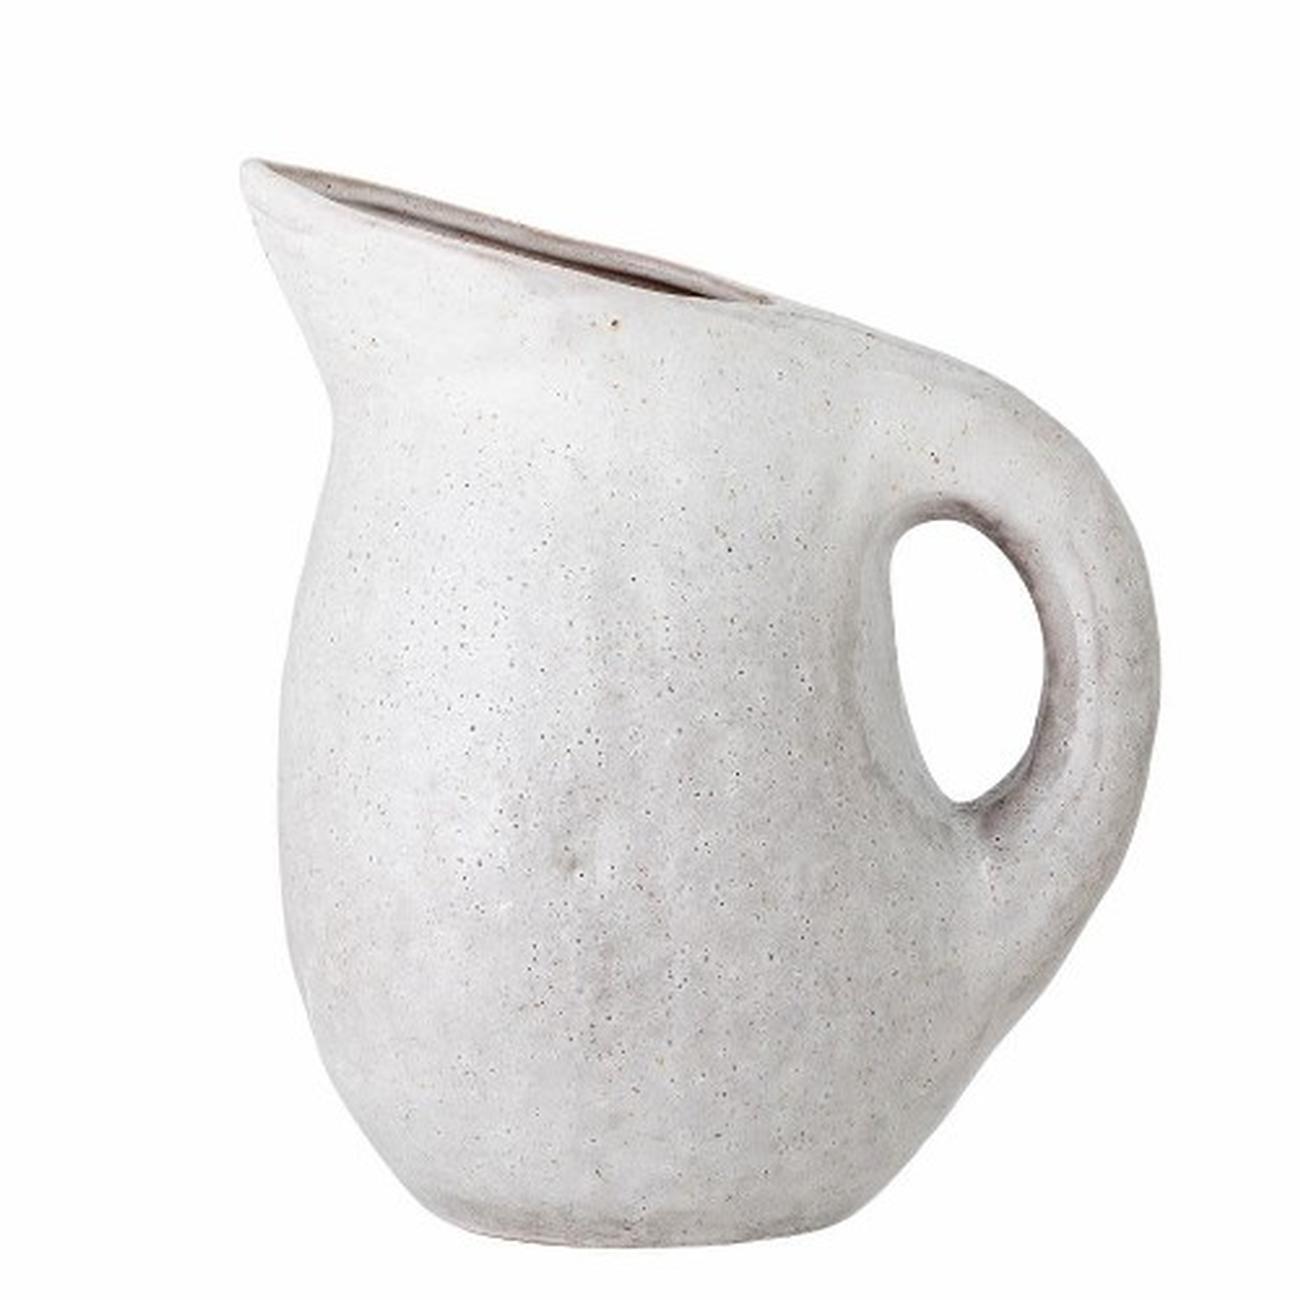 bloomingville-taupe-jug-grey-stoneware - Taupe Stoneware Jug Grey